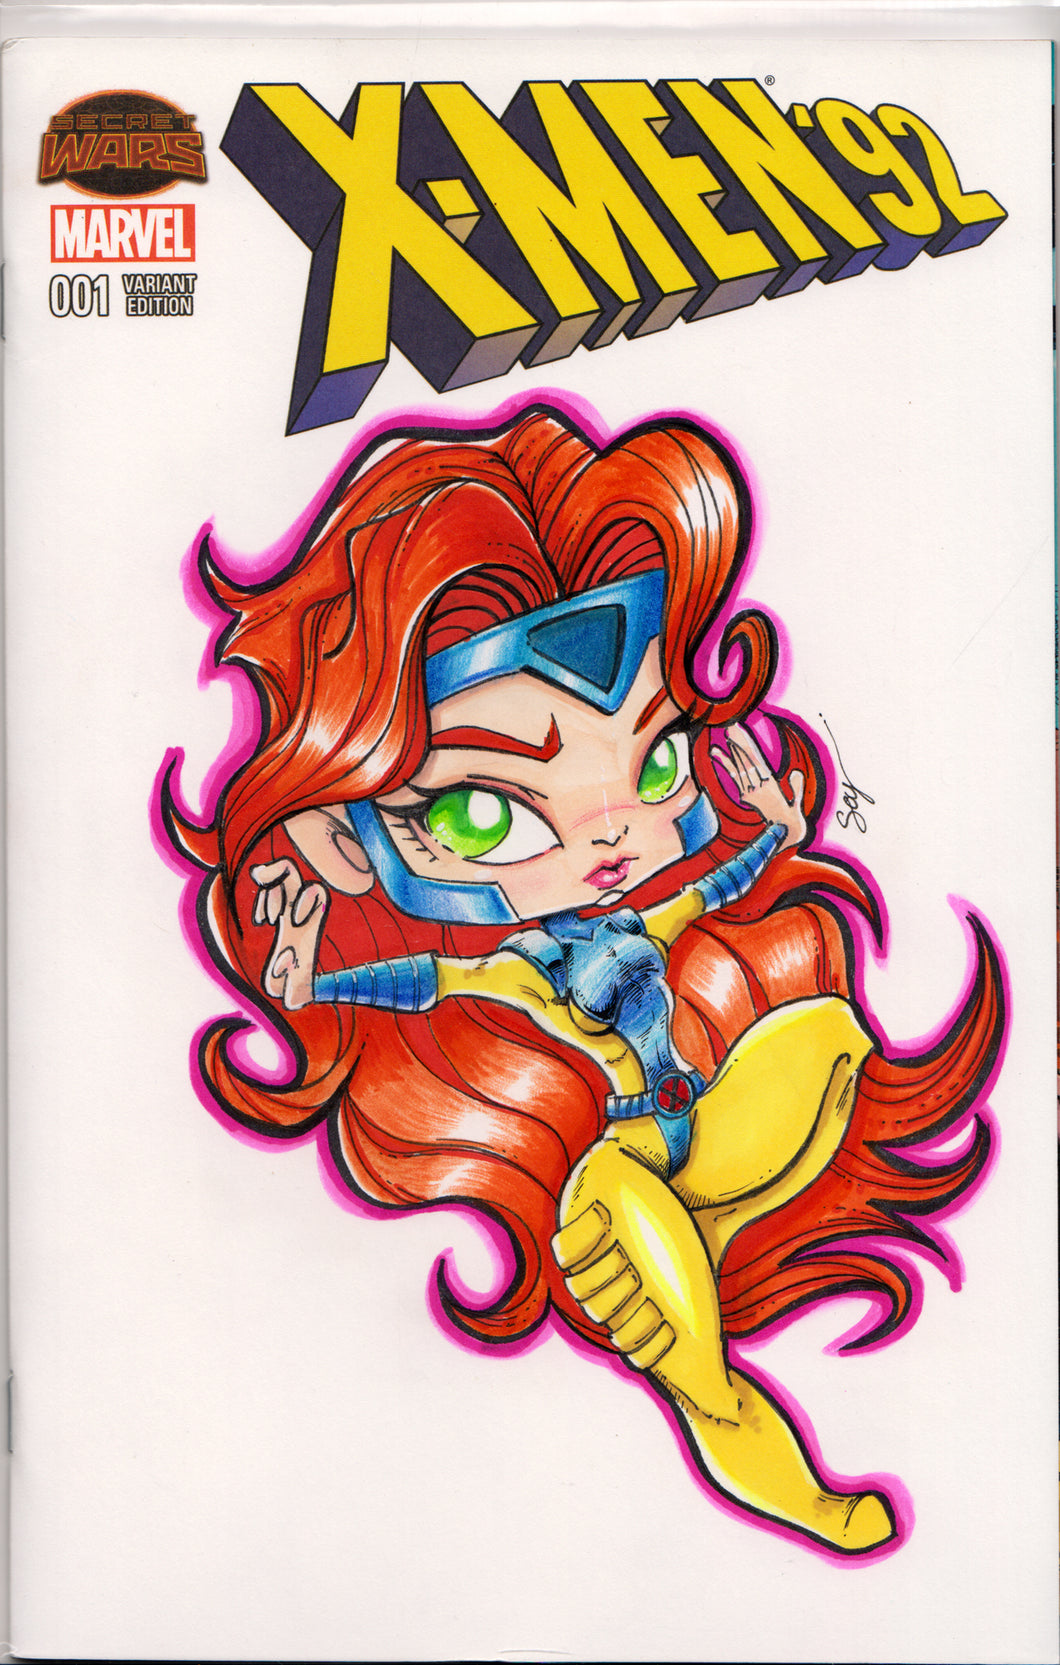 X-MEN '92 #1 w/ORIGINAL COVER ART BY ENRIQUE 